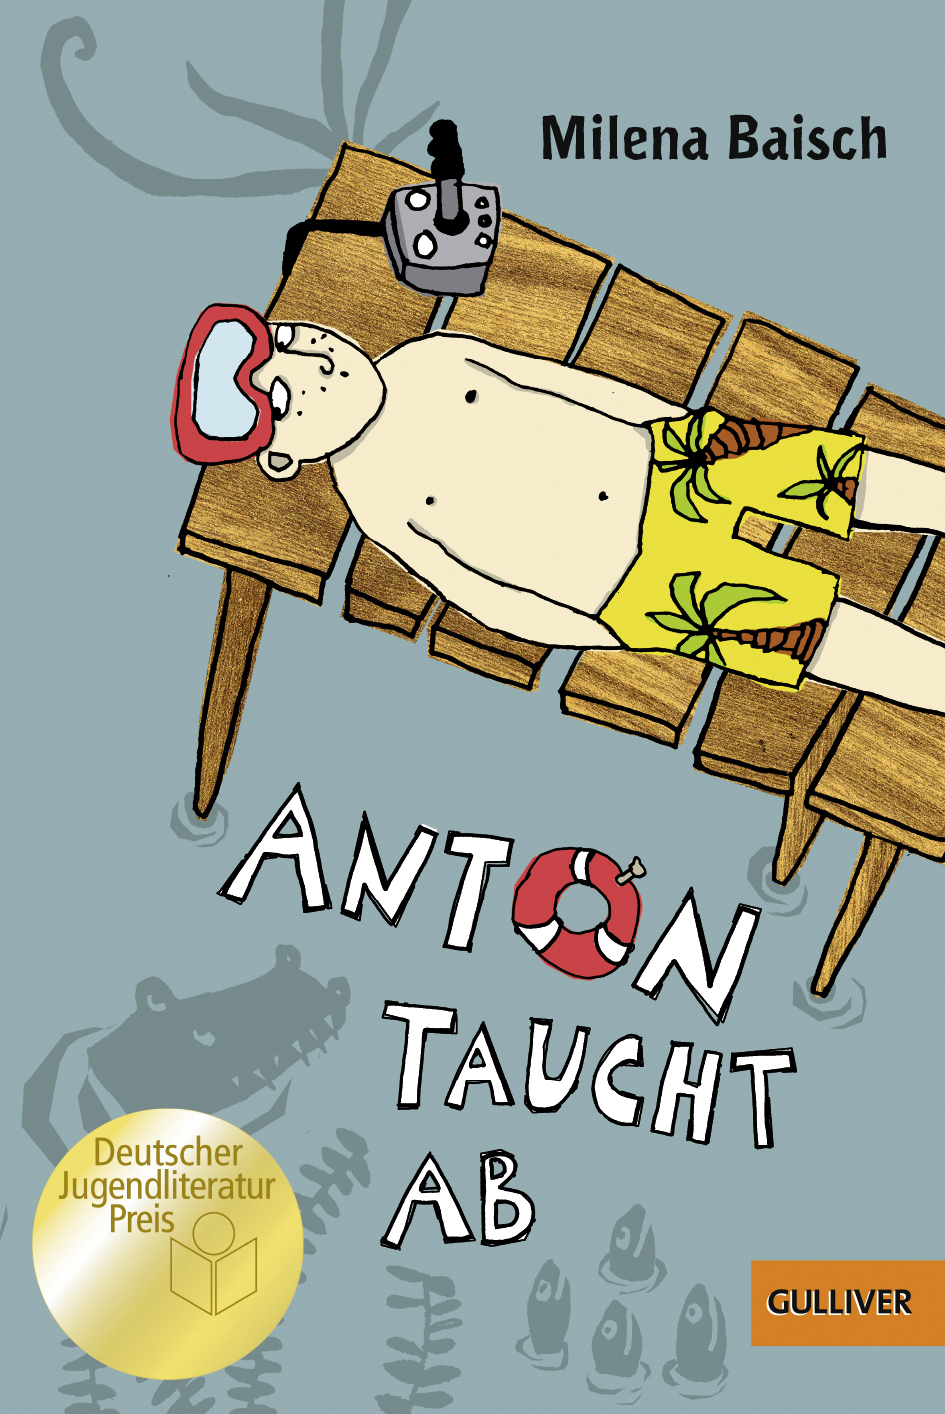 Lesetipp für die Ferien 1:Anton taucht ab